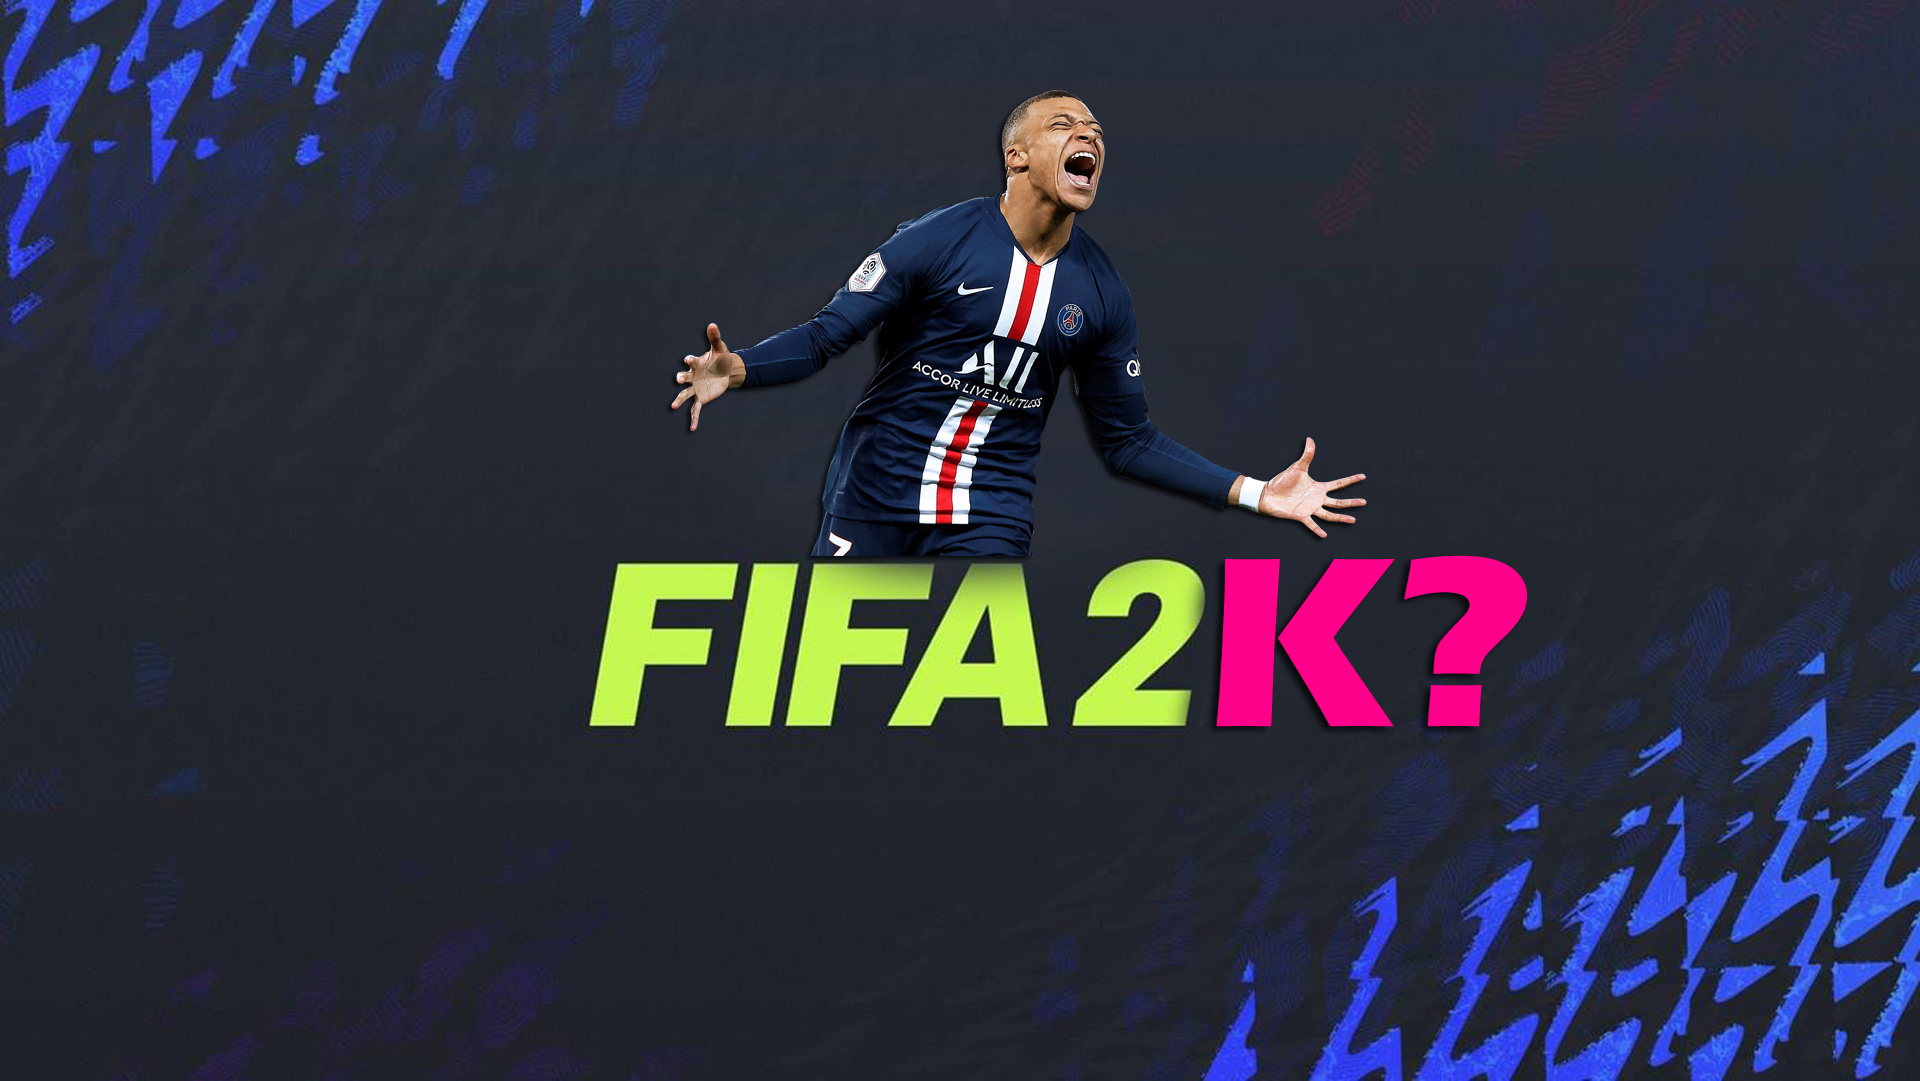 Das neue FIFA-Spiel kommt!  Welches Unternehmen wird es entwickeln?